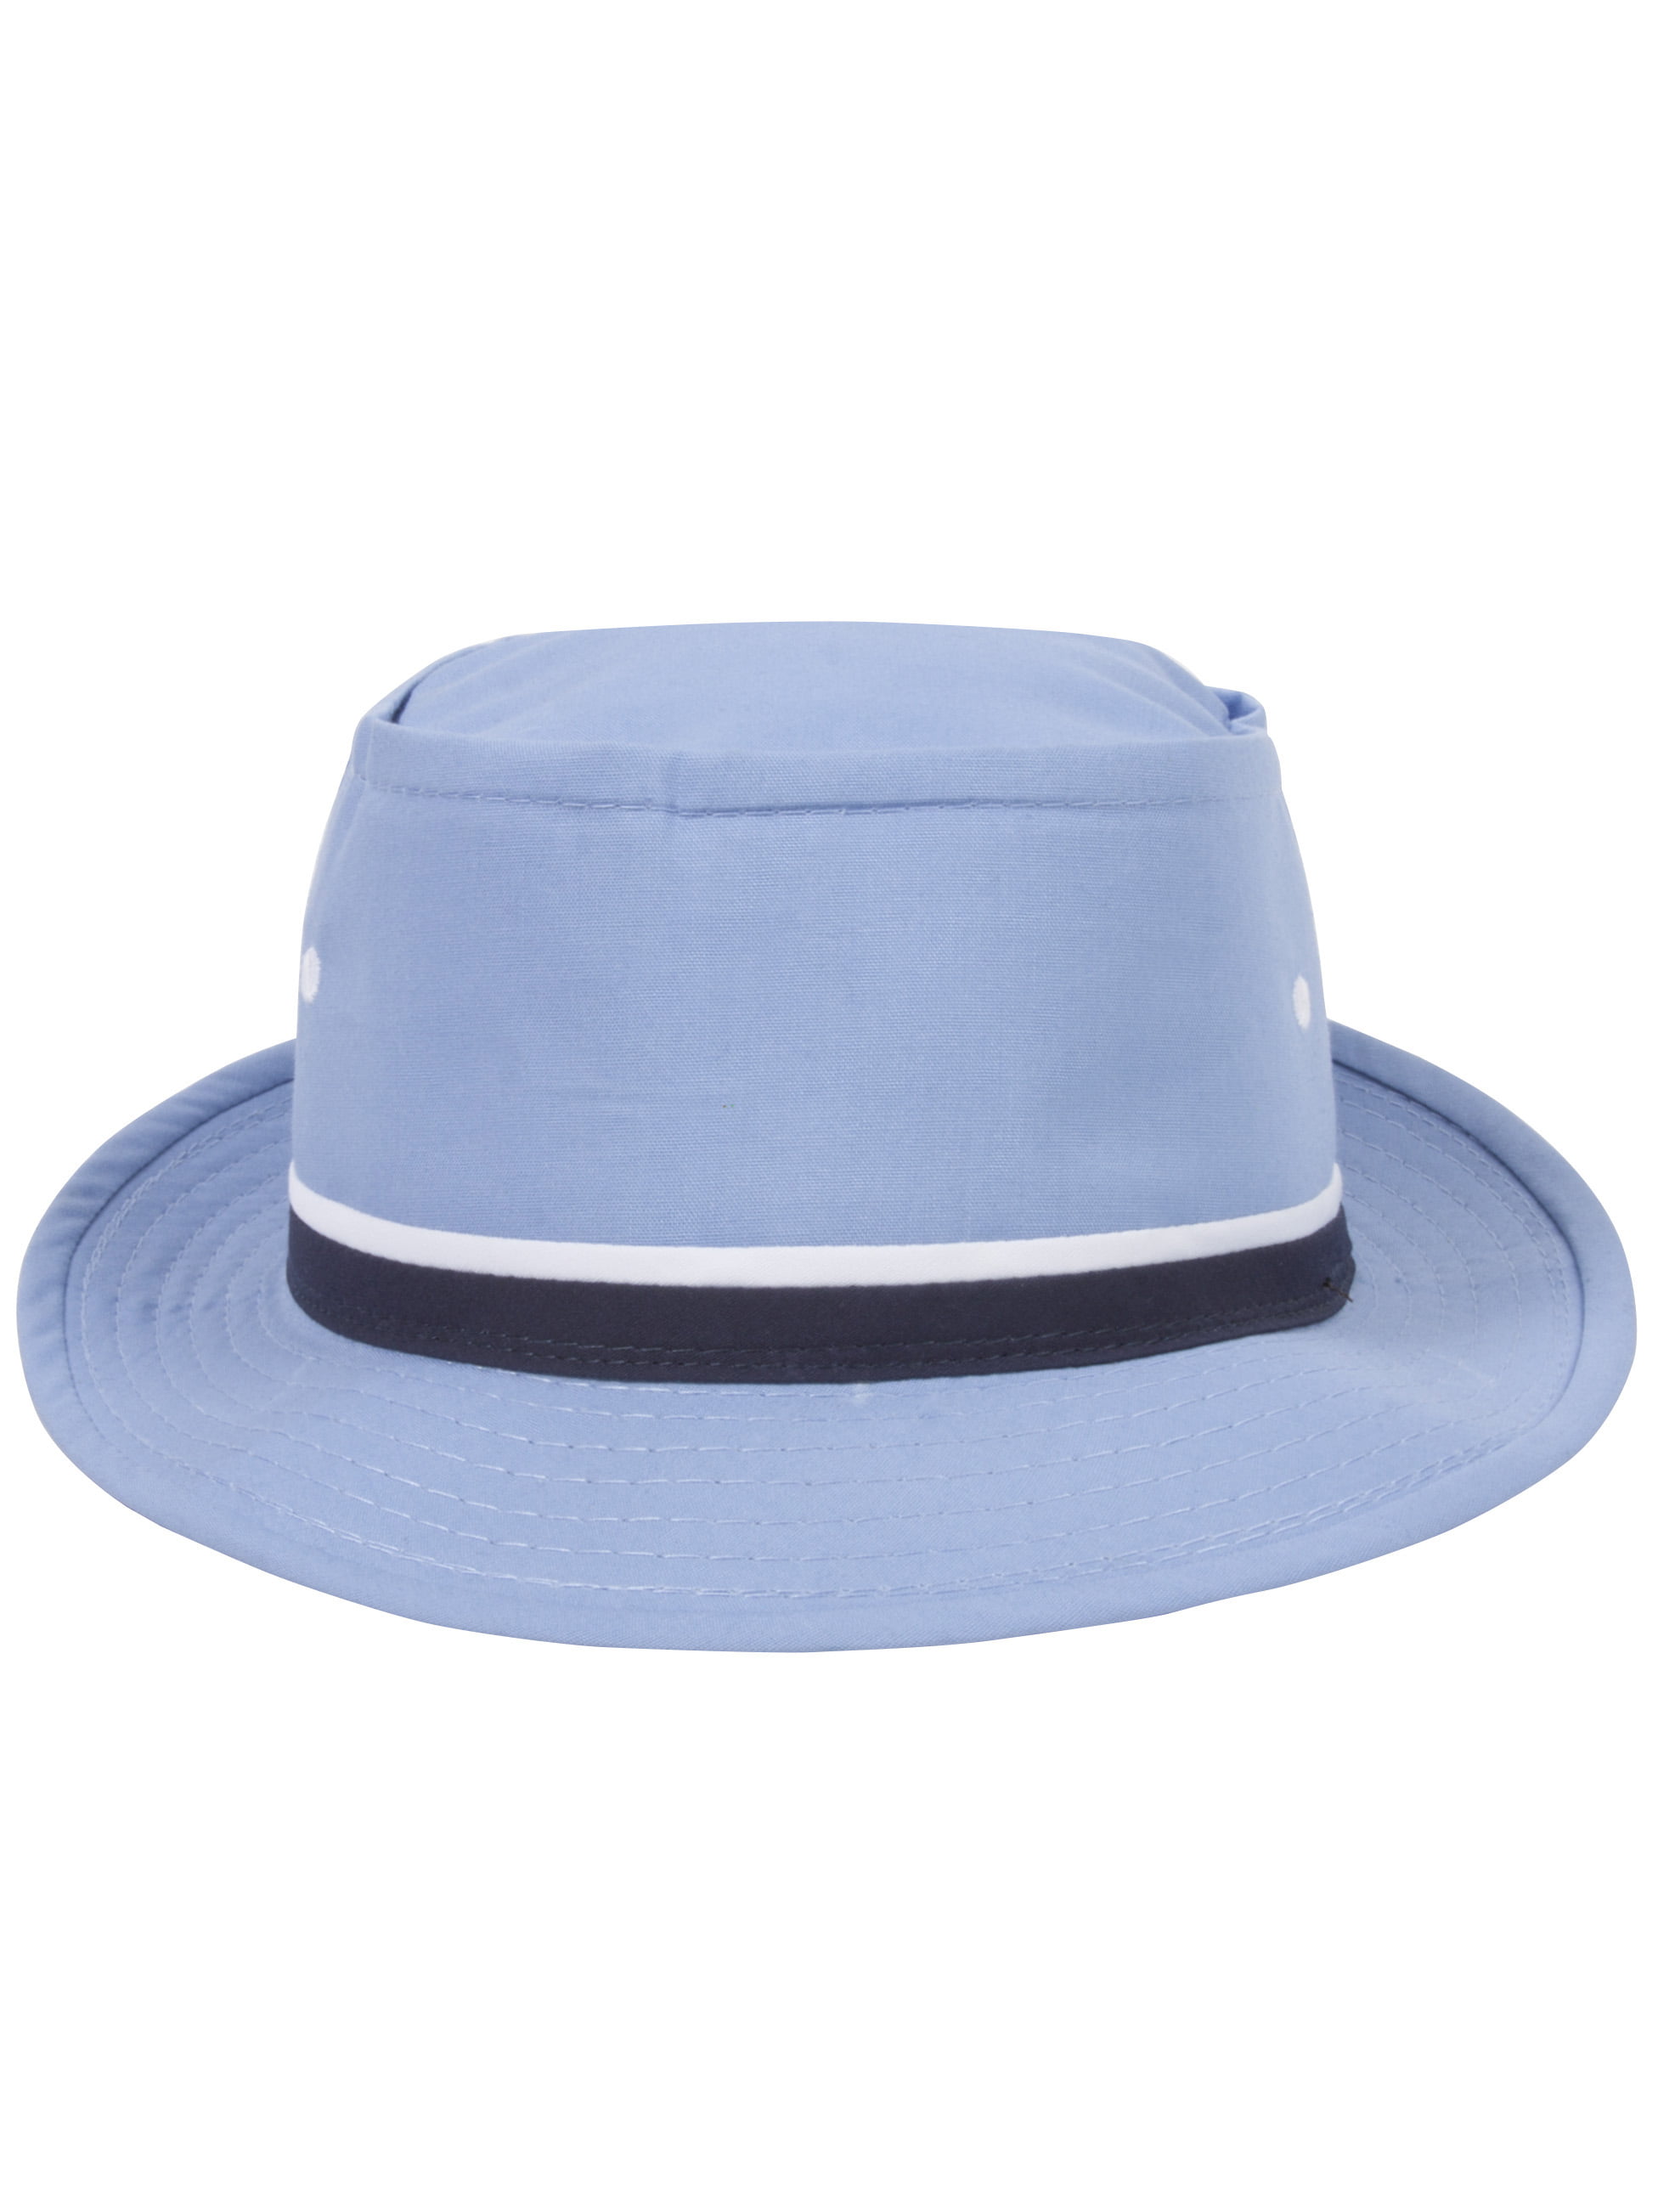 TopHeadwear - Top Headwear Packable Pork Pie Ribbon Bucket Hat ...